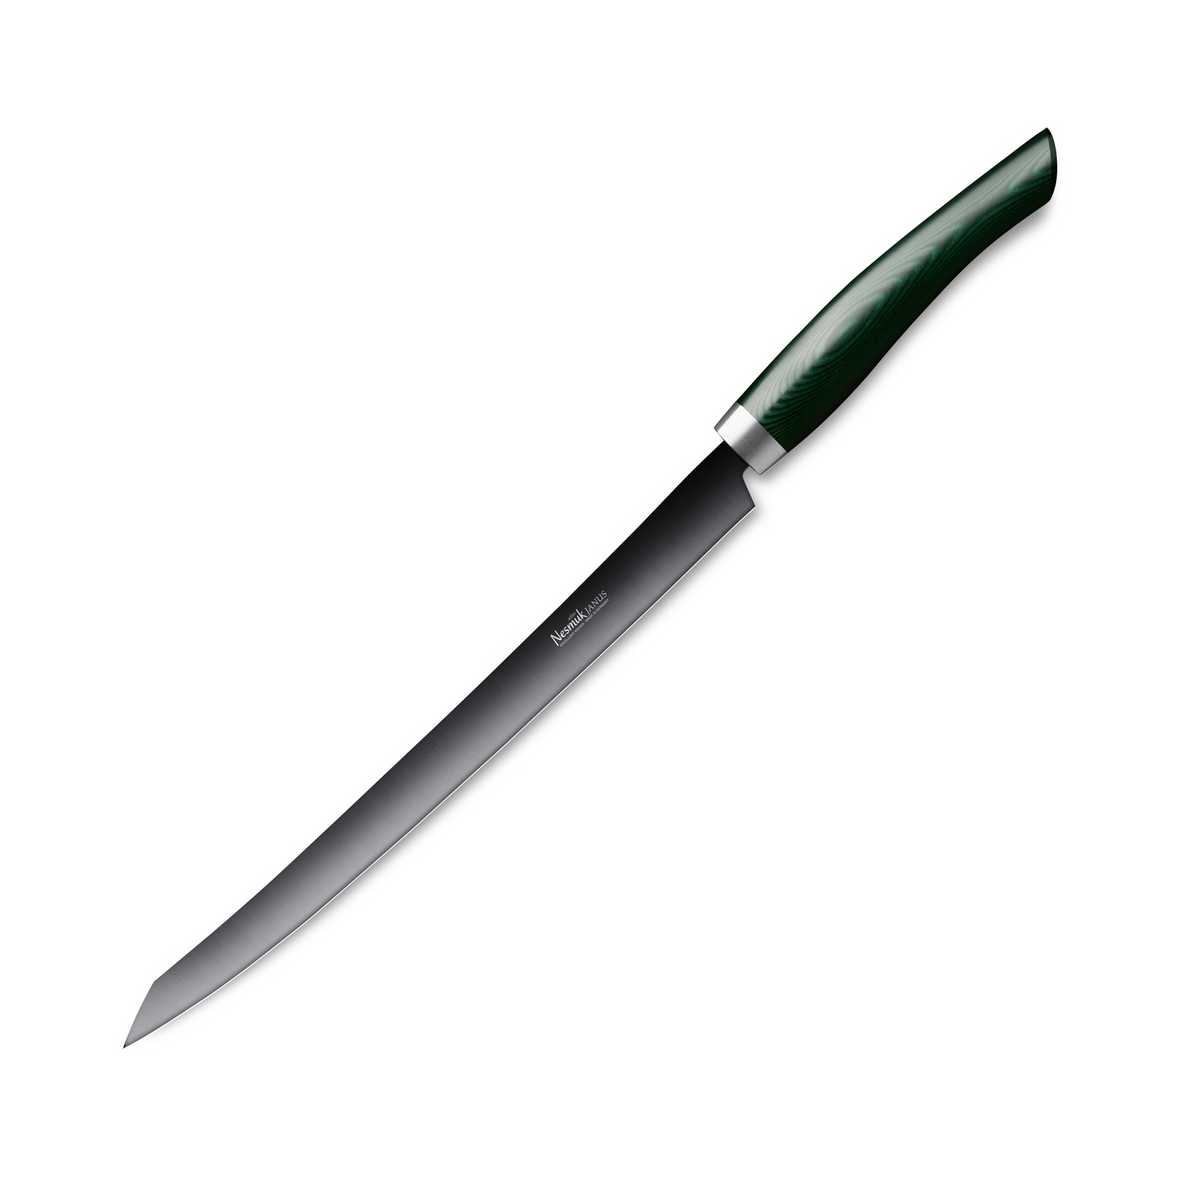 Nesmuk Janus Slicer 26 cm / Niob-Hochleistungsstahl mit DLC-Beschichtung und Griff aus grünem Micarta